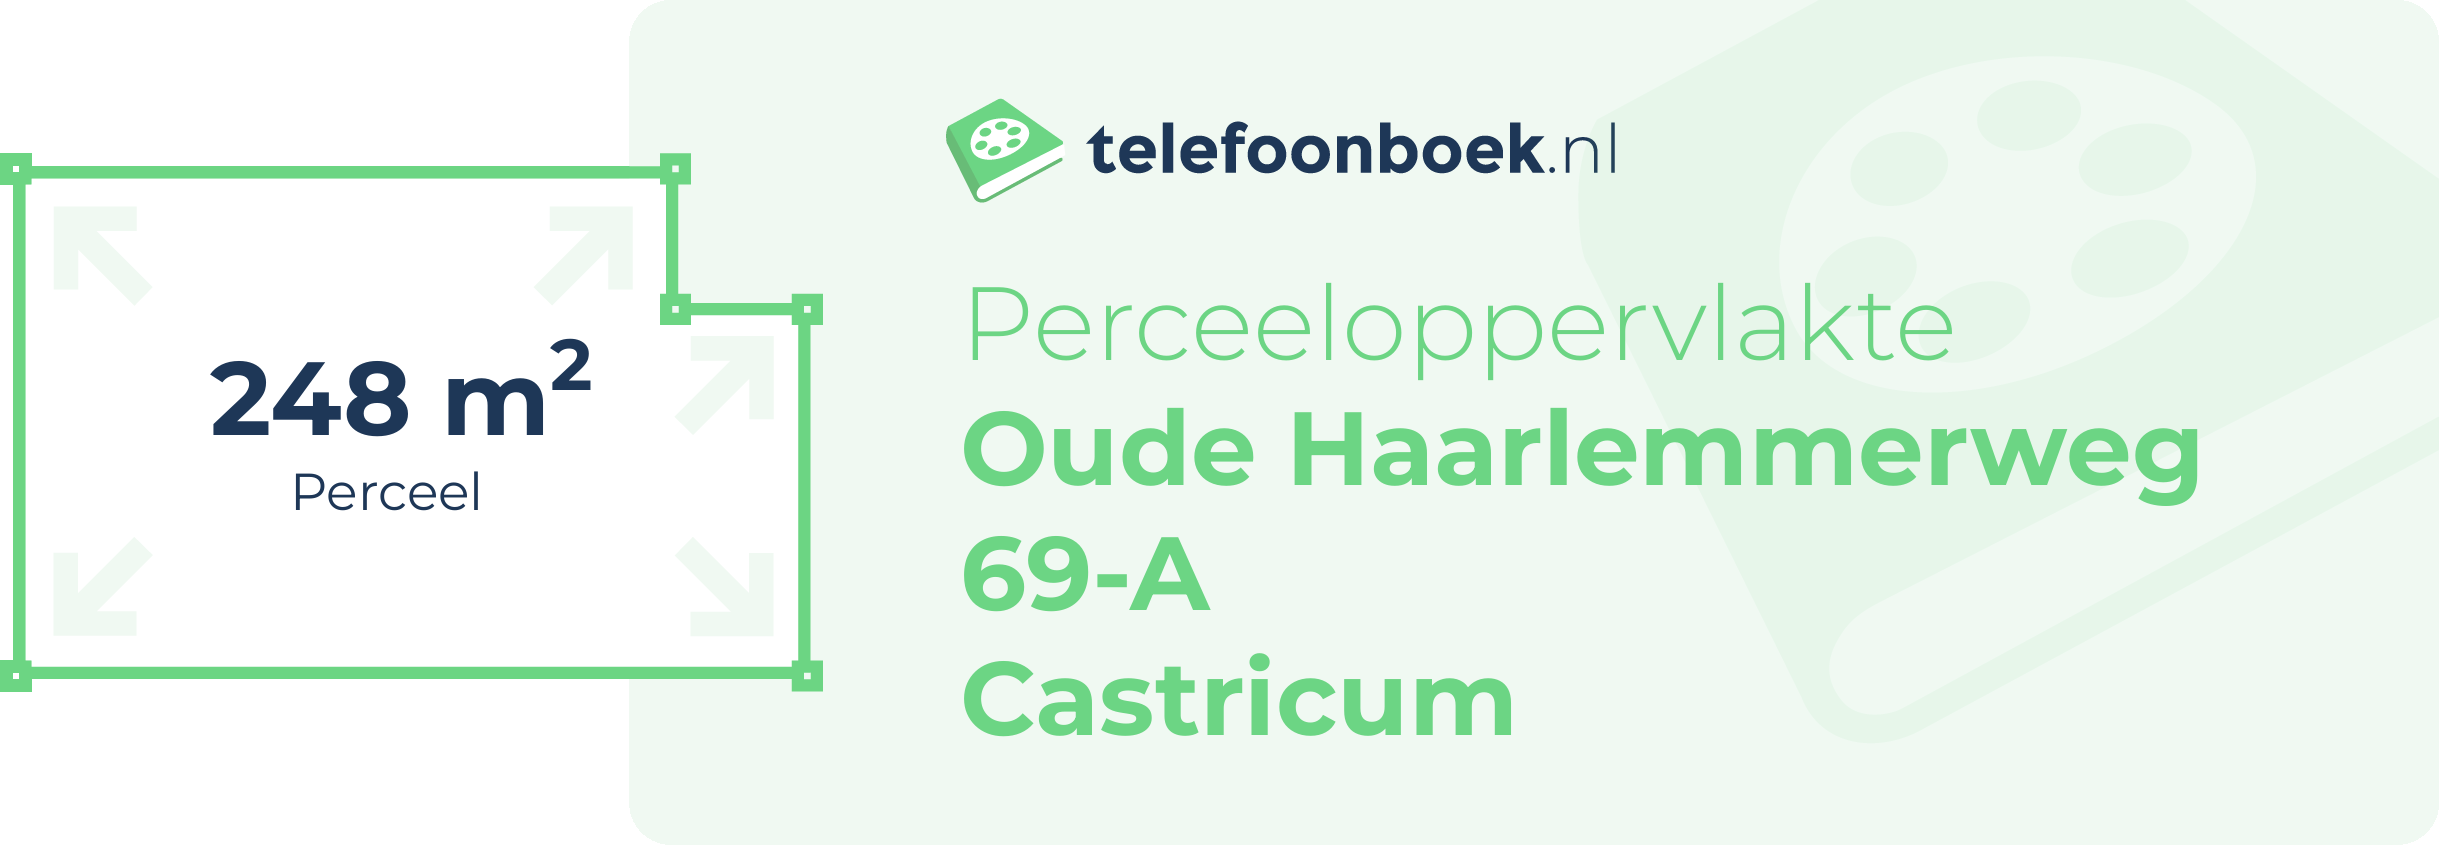 Perceeloppervlakte Oude Haarlemmerweg 69-A Castricum